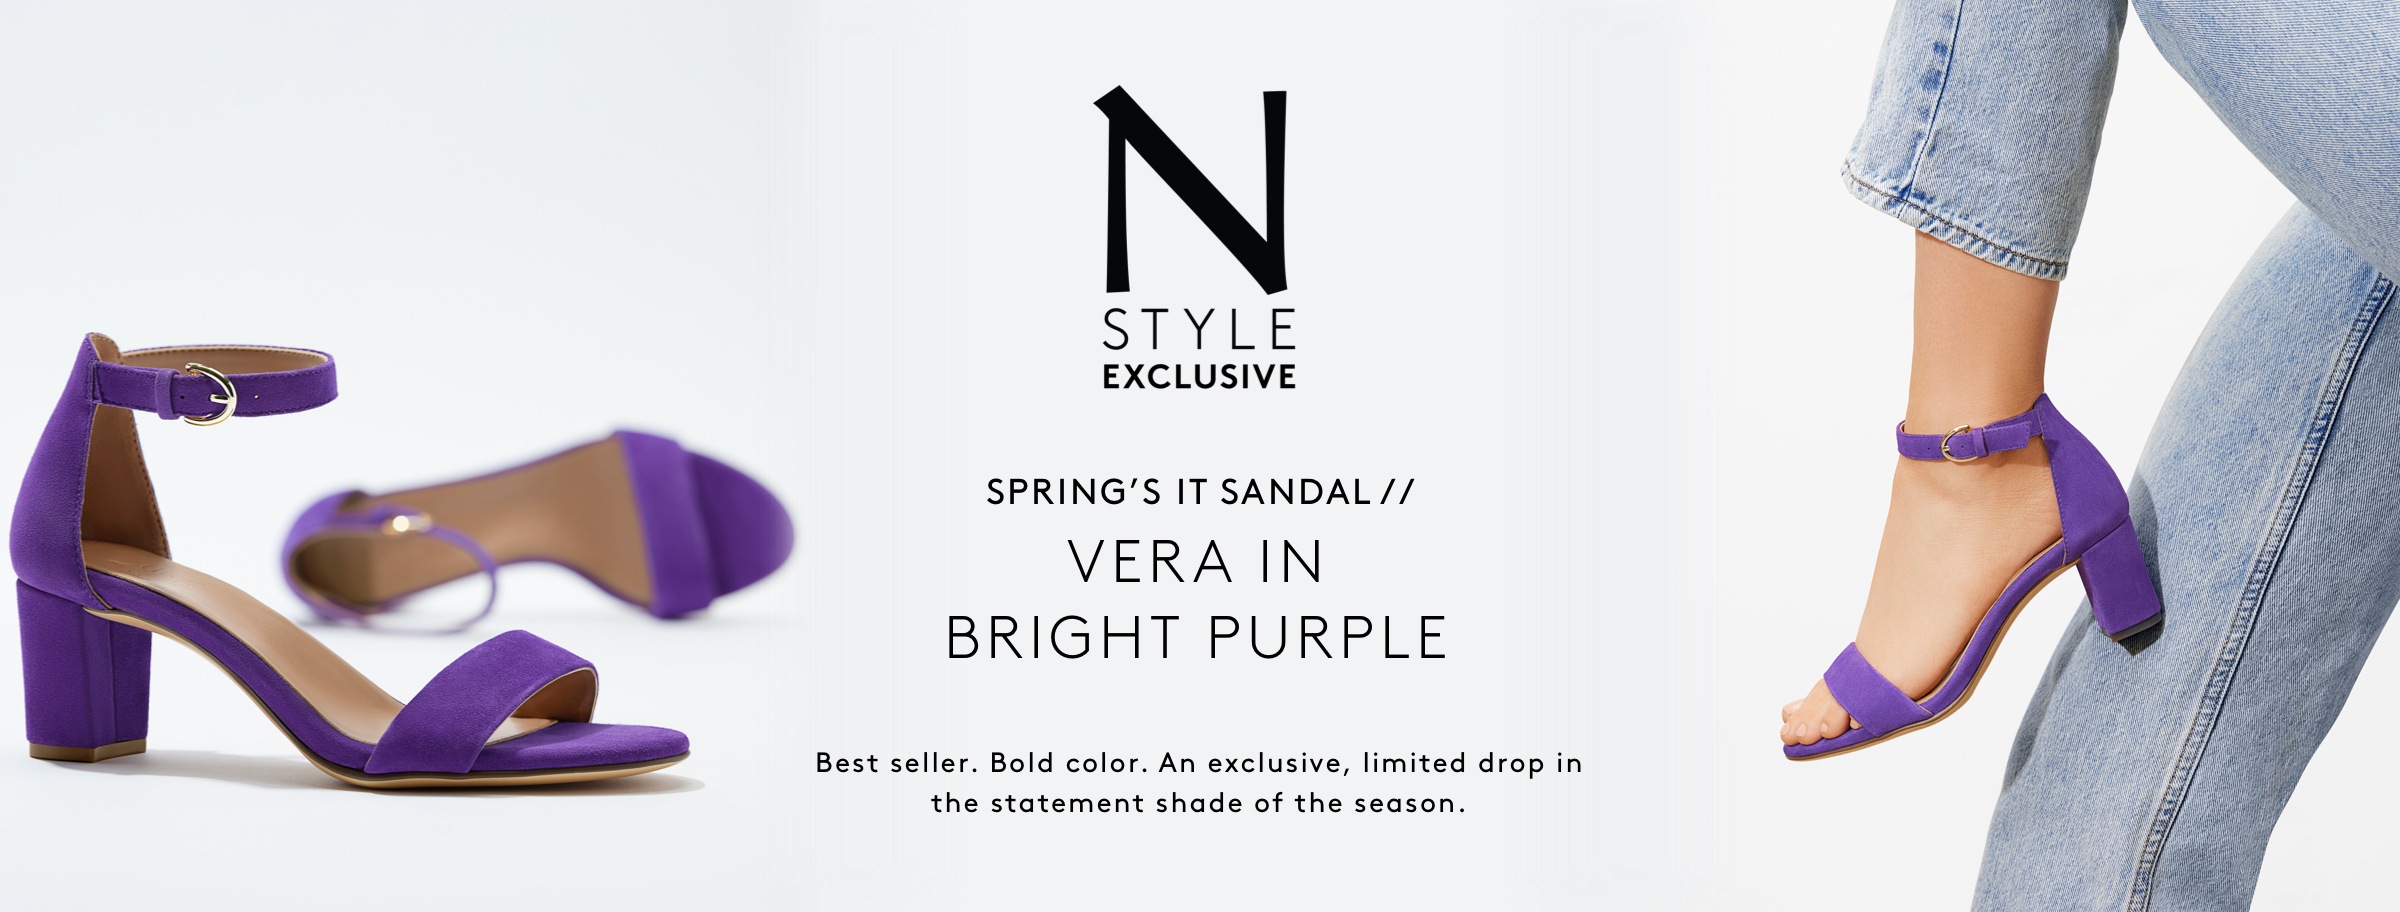 Naturalizer exclusive style , Vera in bright purple